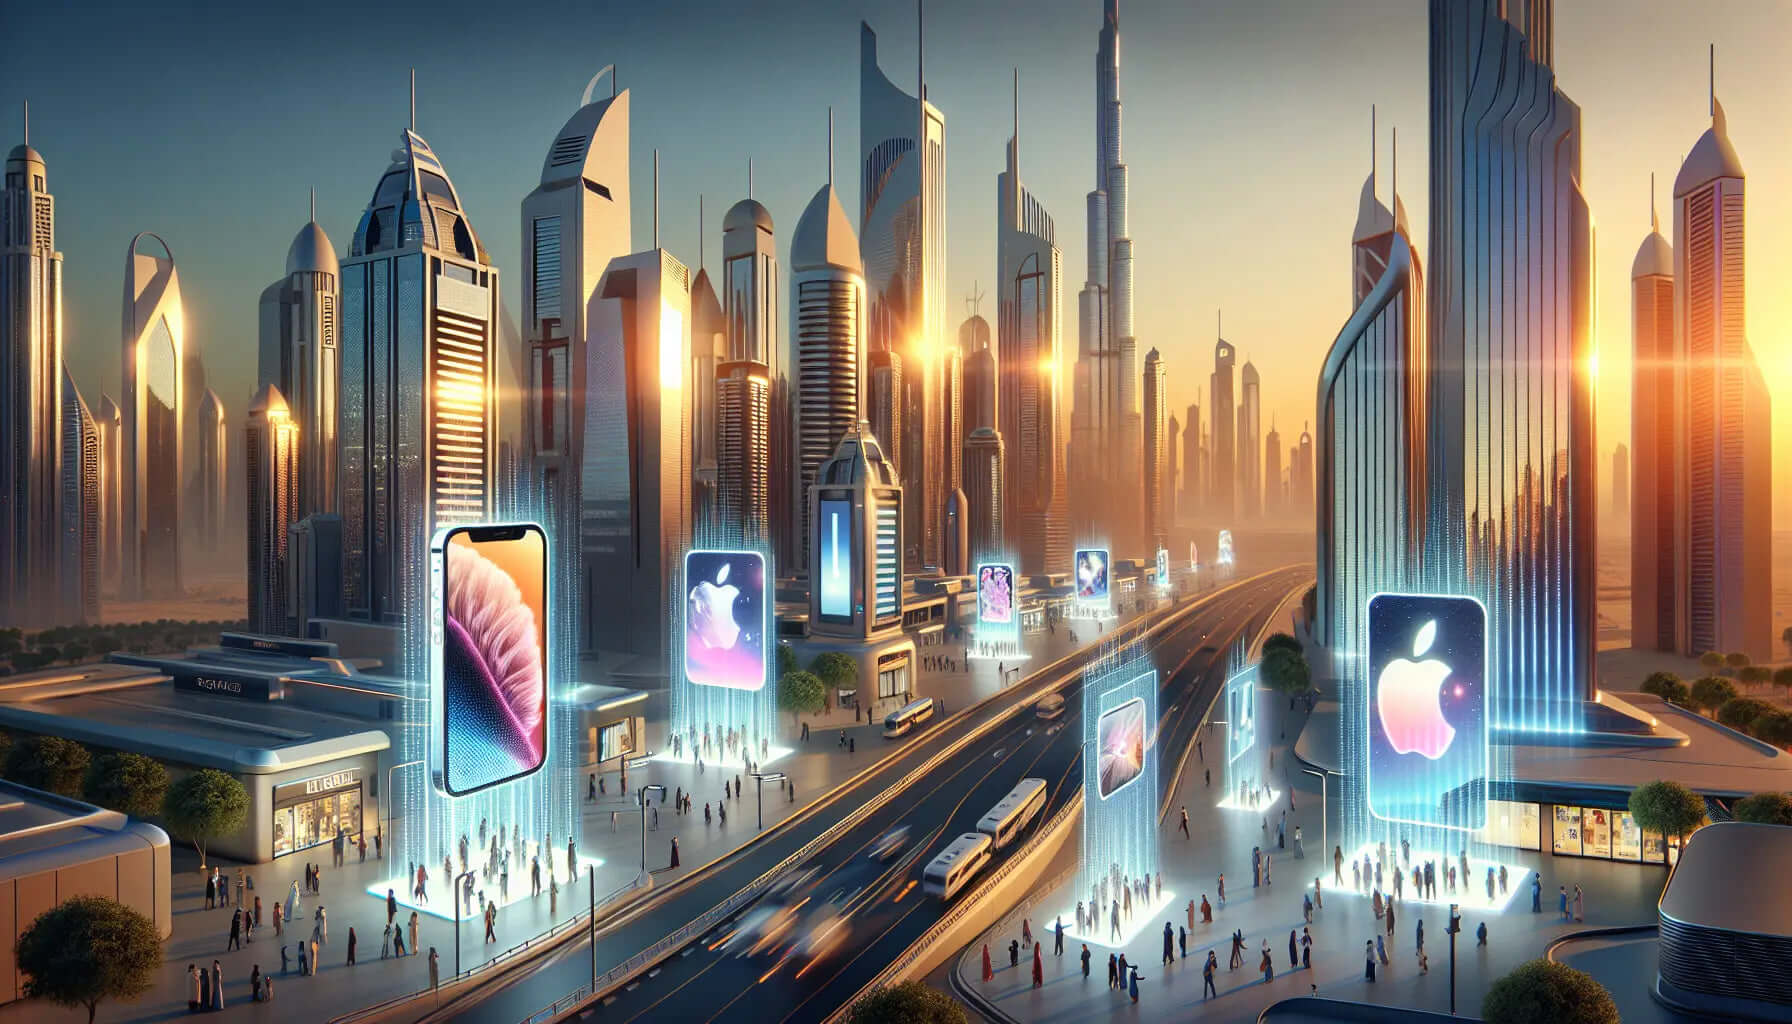  iPhone 13 Mini & iPad: Latest Apple Devices in Dubai